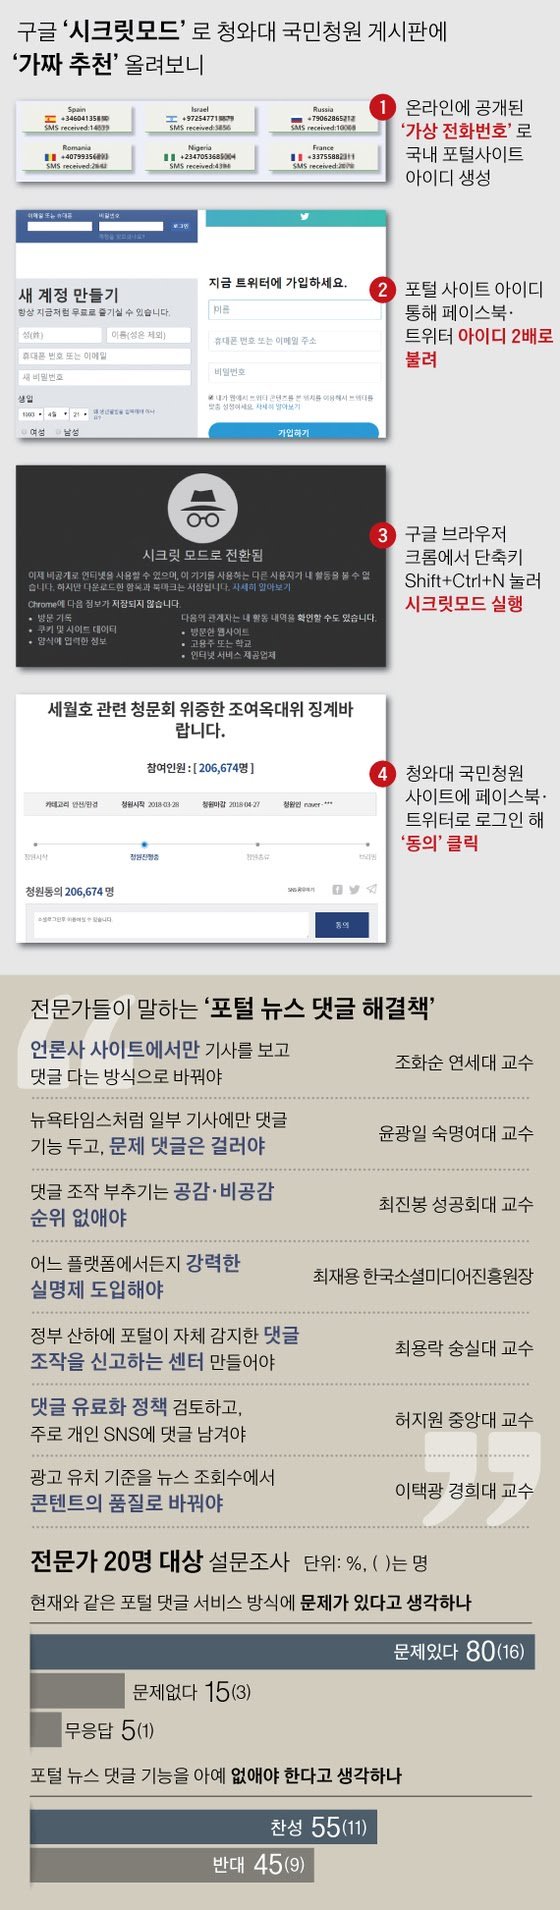 가짜 ID 얼마든지 만들어 … “청와대 국민청원도 조작 가능” ("2018년 4월 23일" 중앙일보)